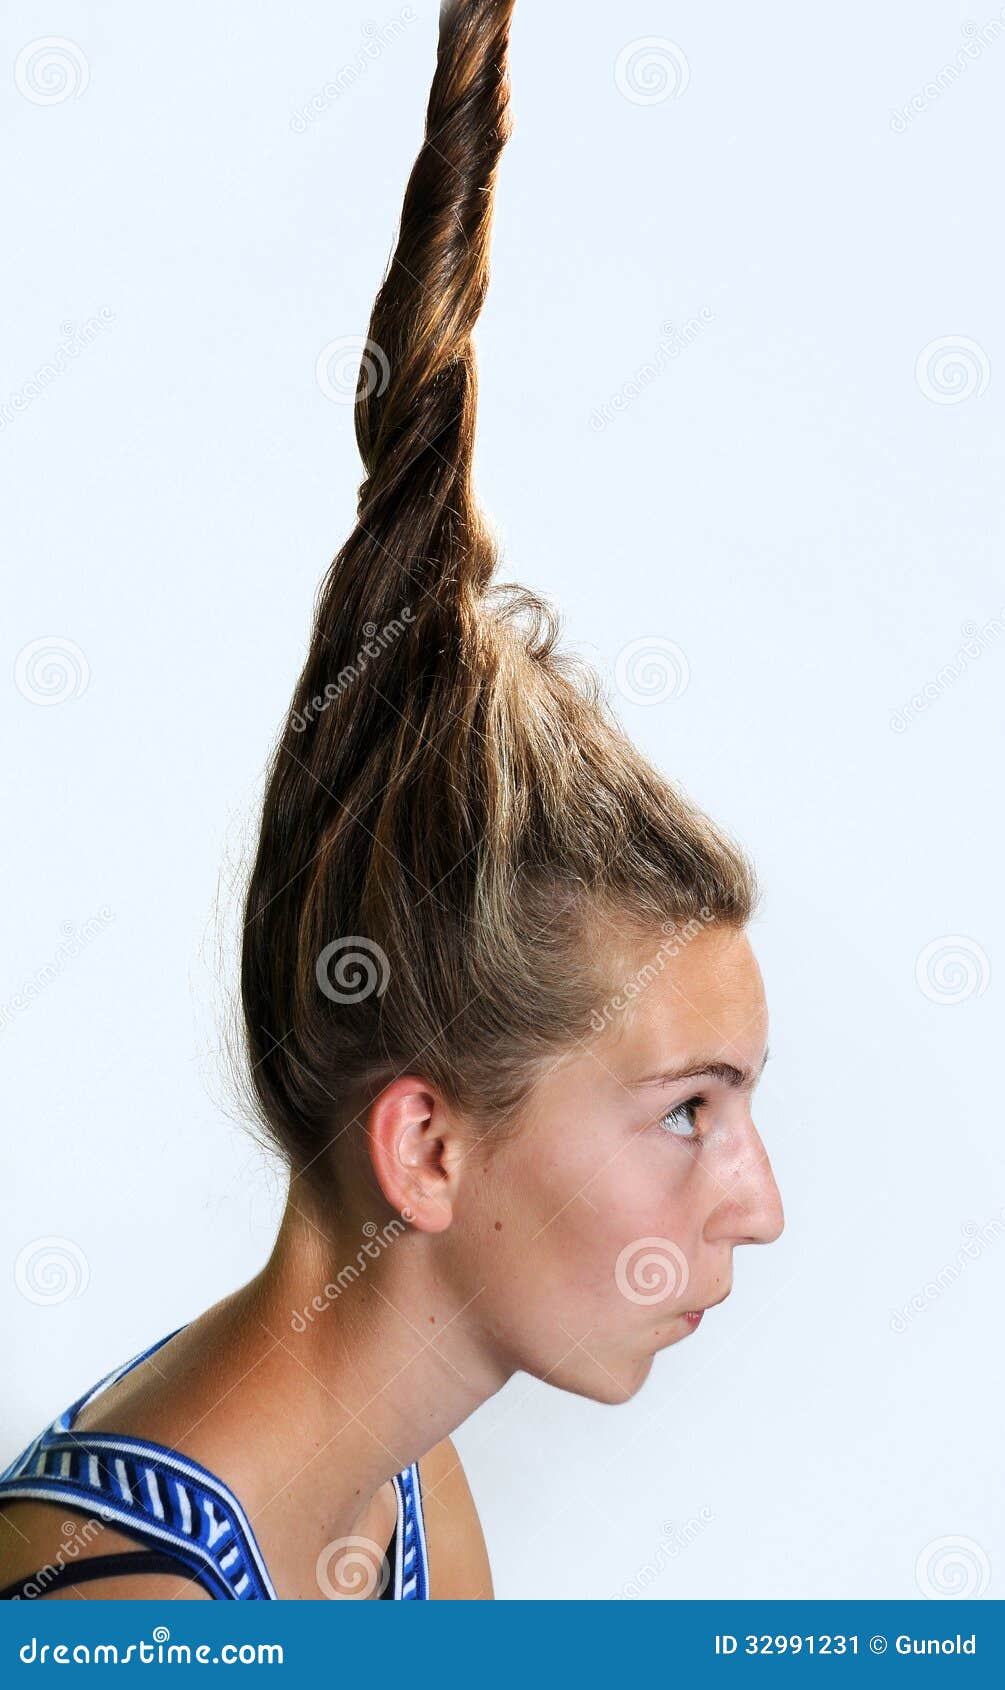 Cute teen girl hair